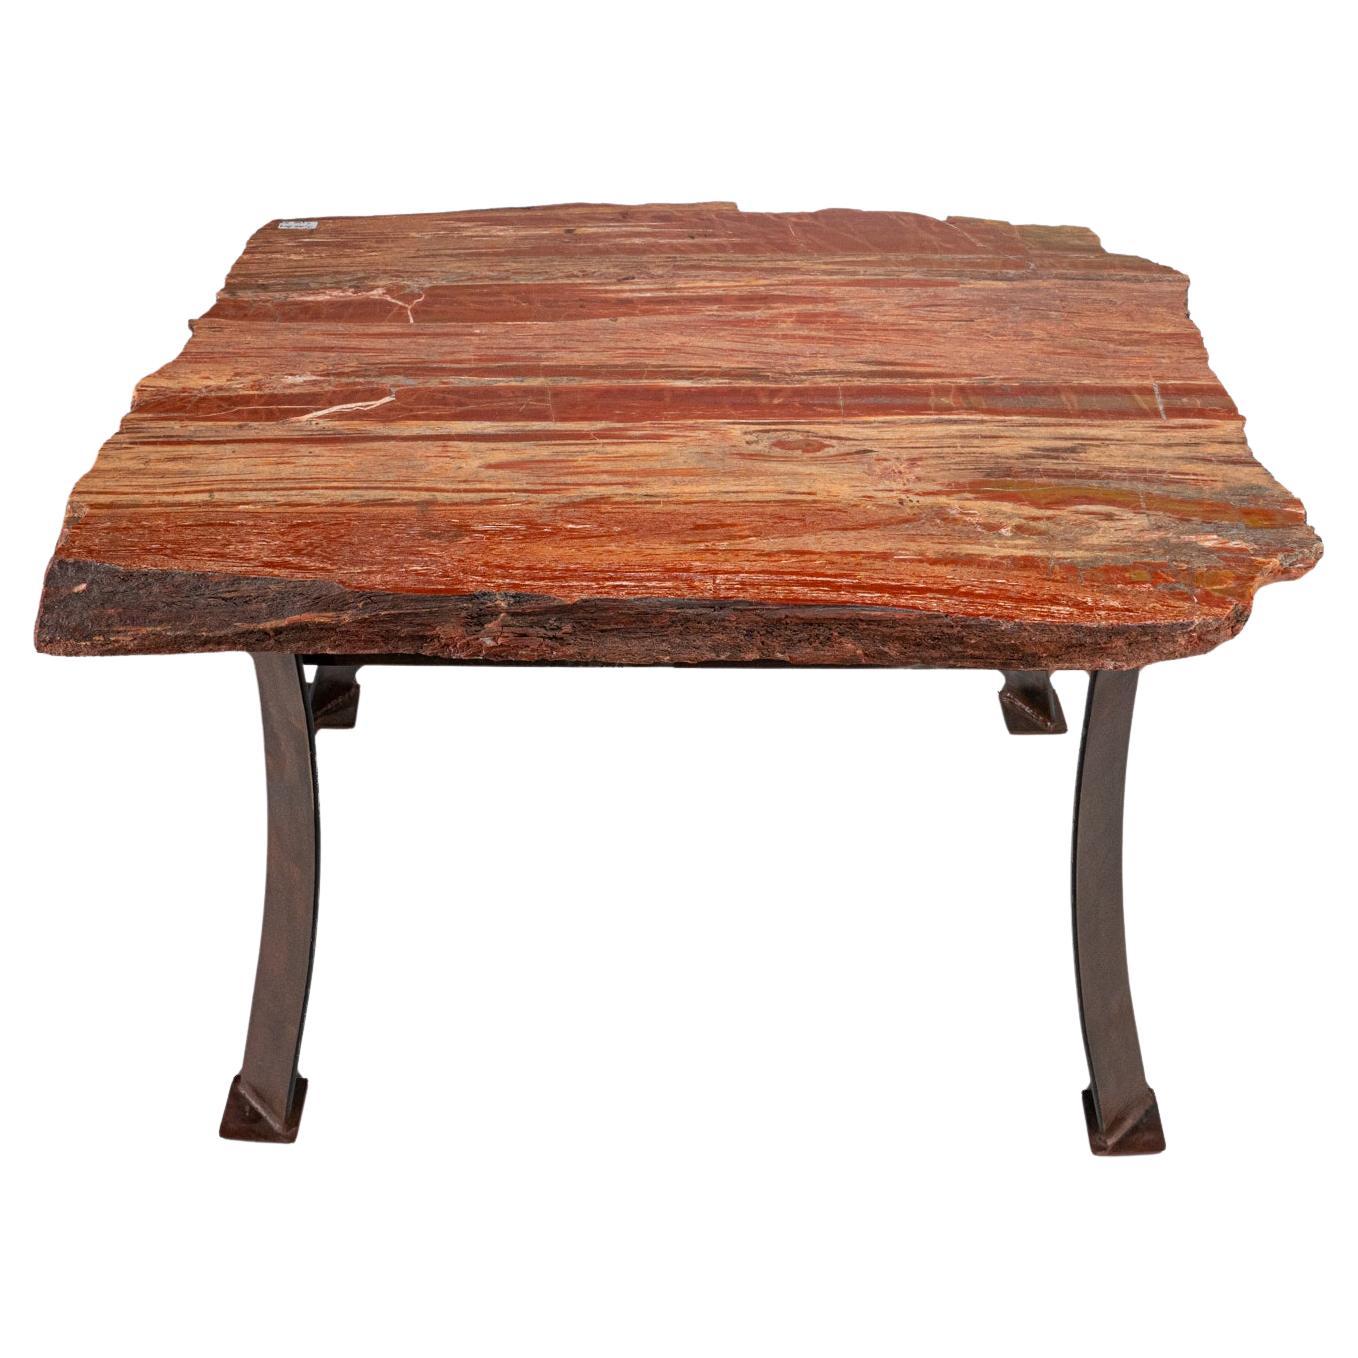 Genuine Polished Petrified Wood Table (55.5 lbs) For Sale